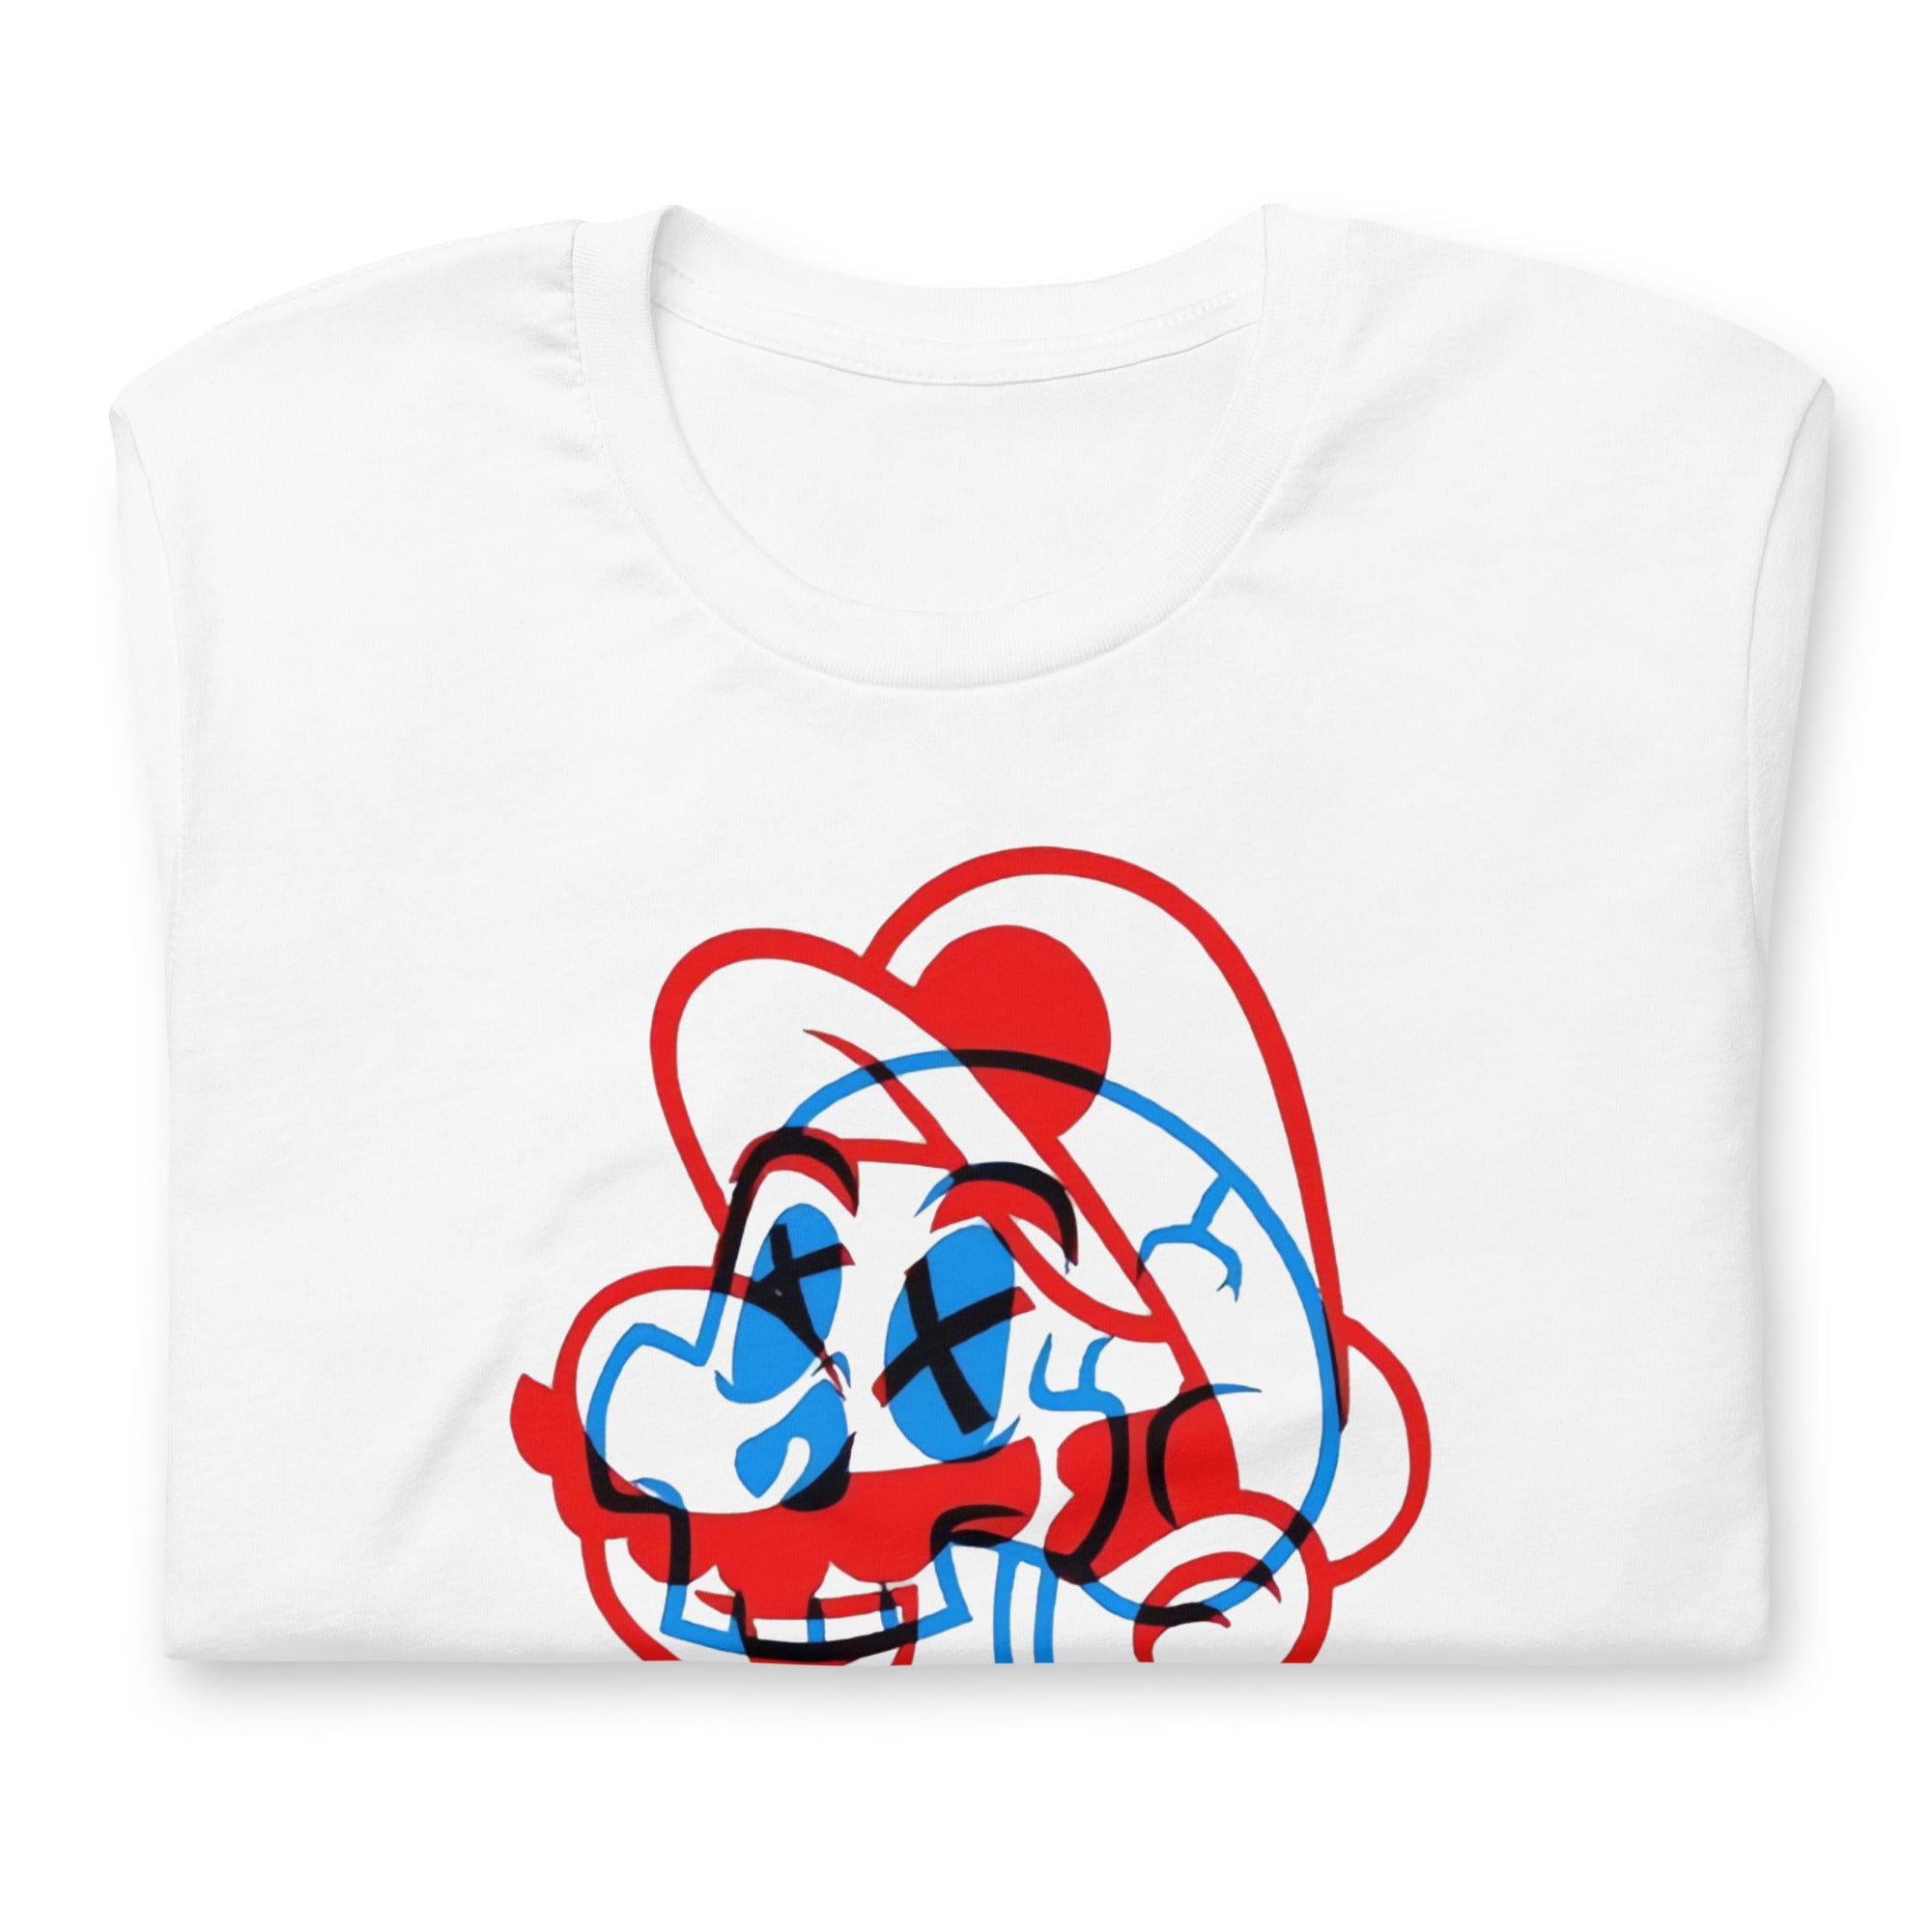 ¡Compra el mejor merchandising en Superstar! Encuentra diseños únicos y de alta calidad, Playera Mario Skull